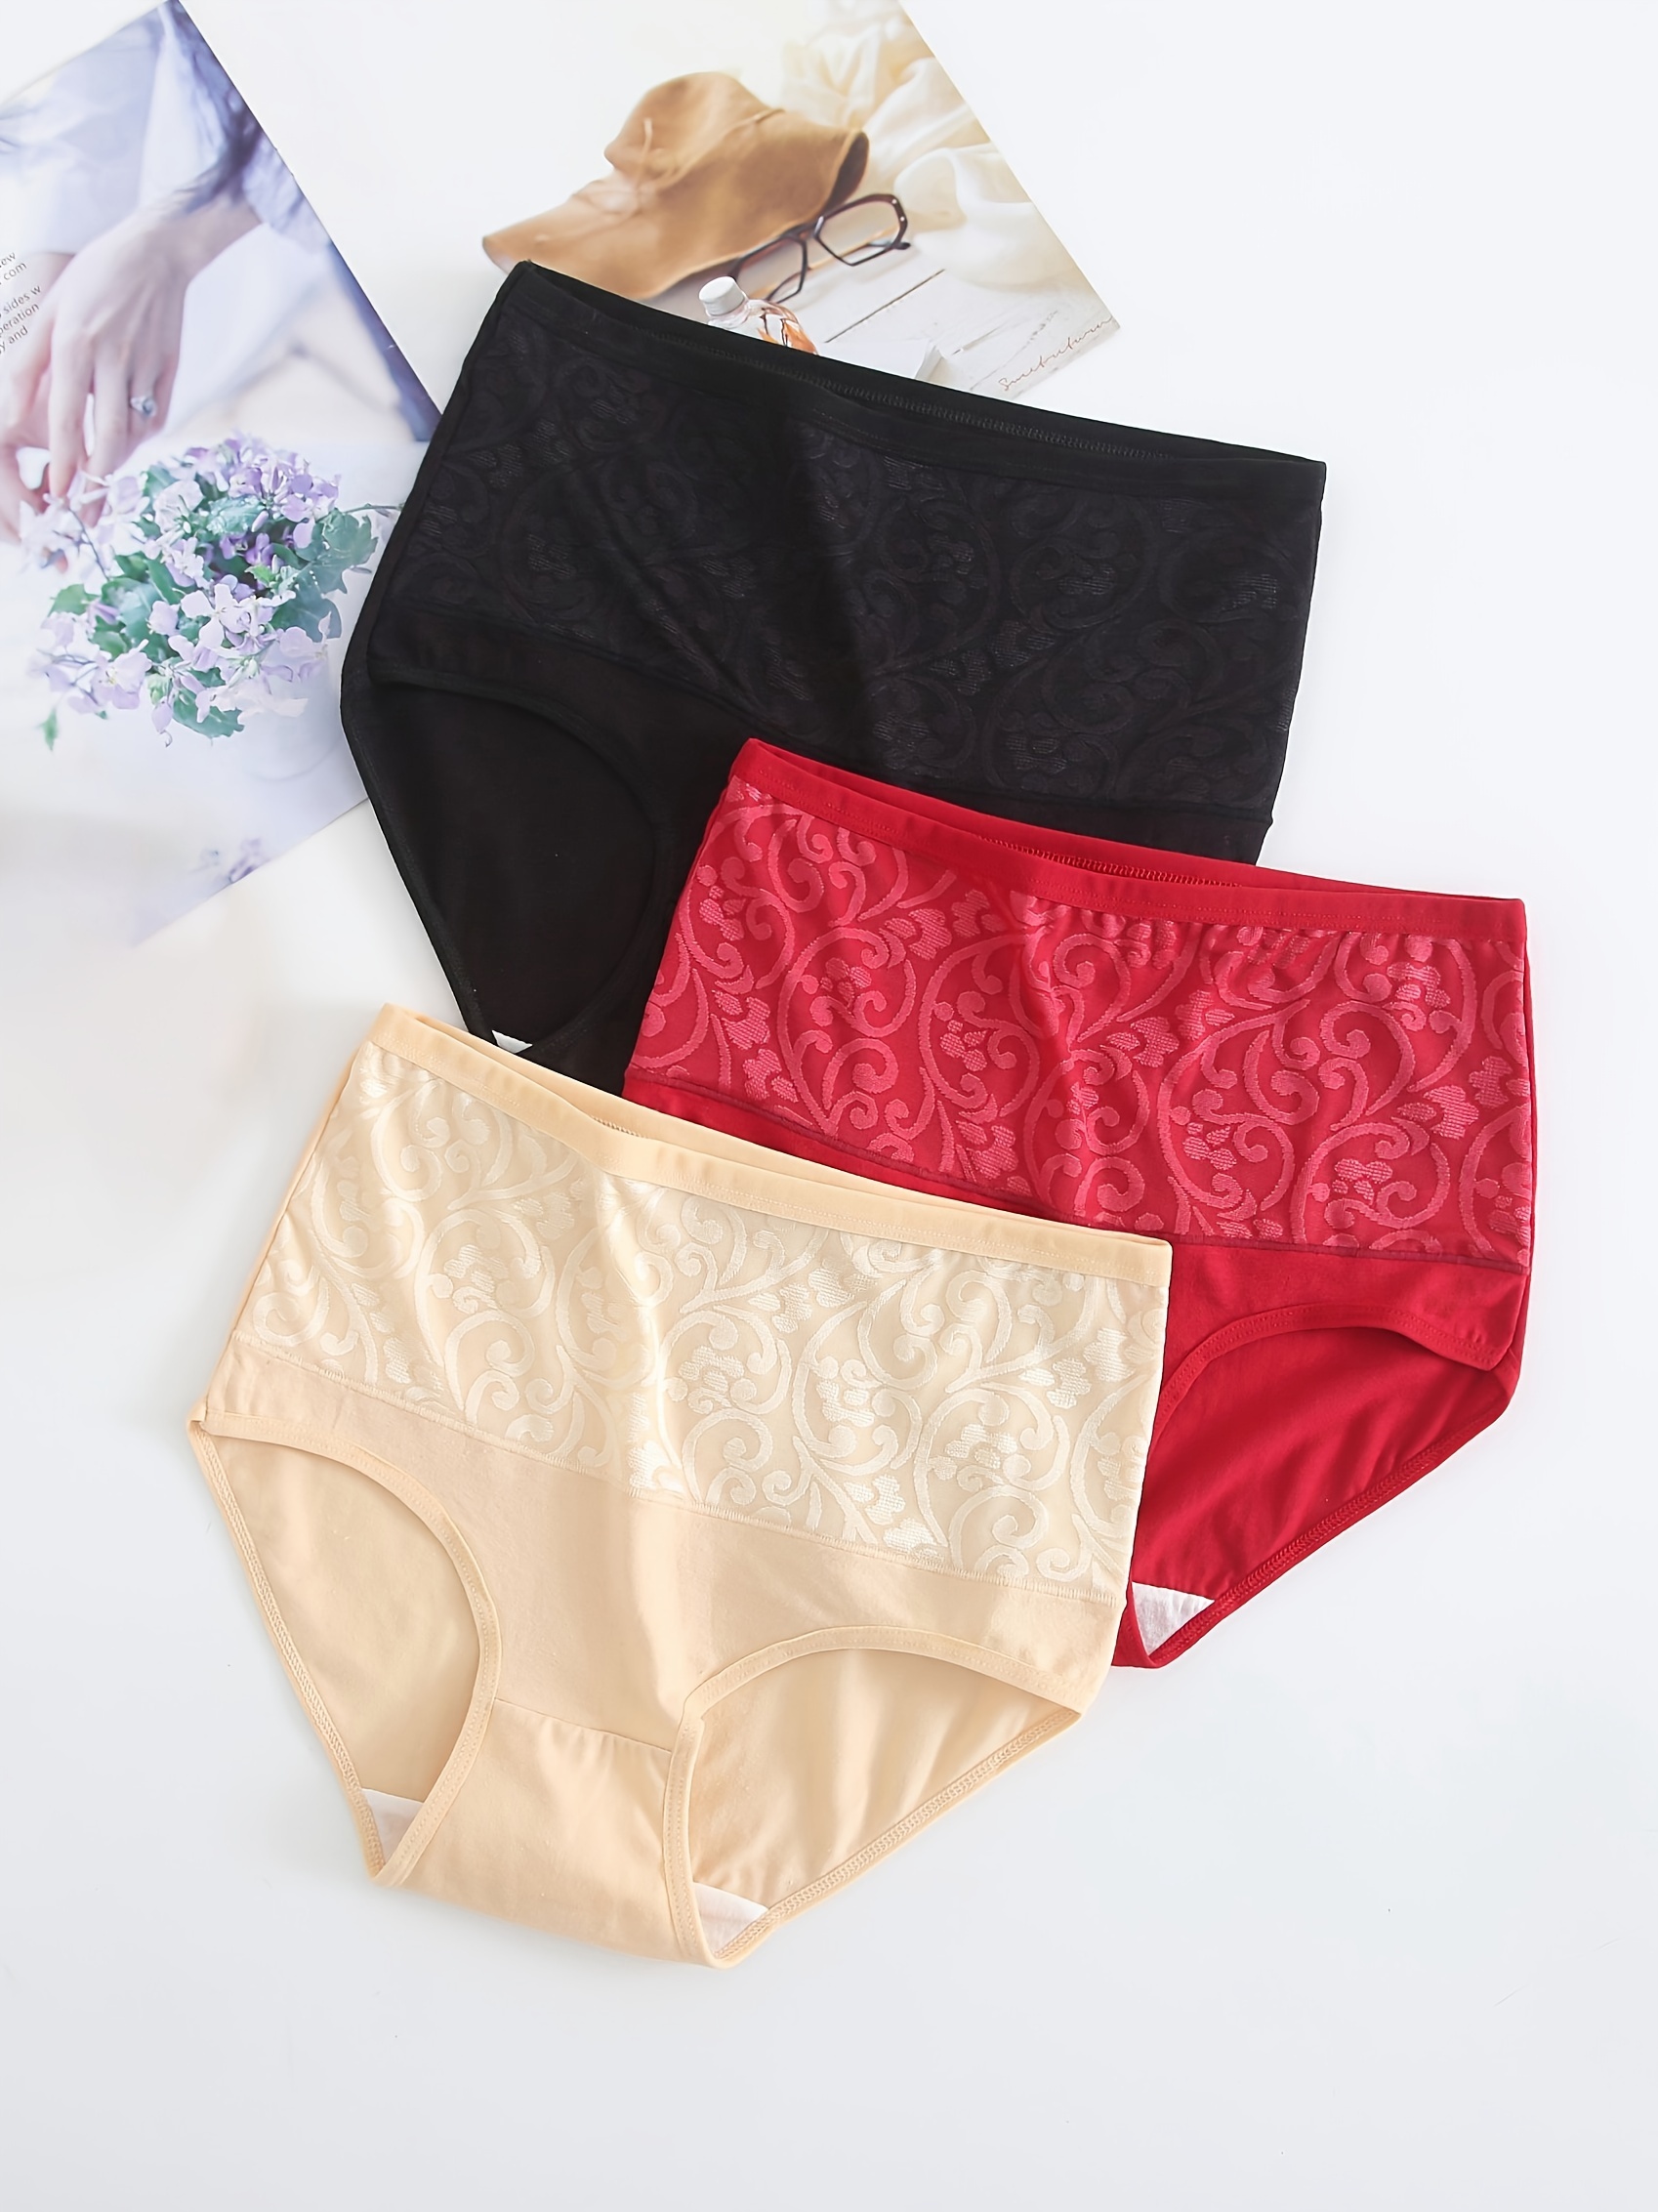 Women's Soft Cotton Underwear Briefs Breathable High Waist